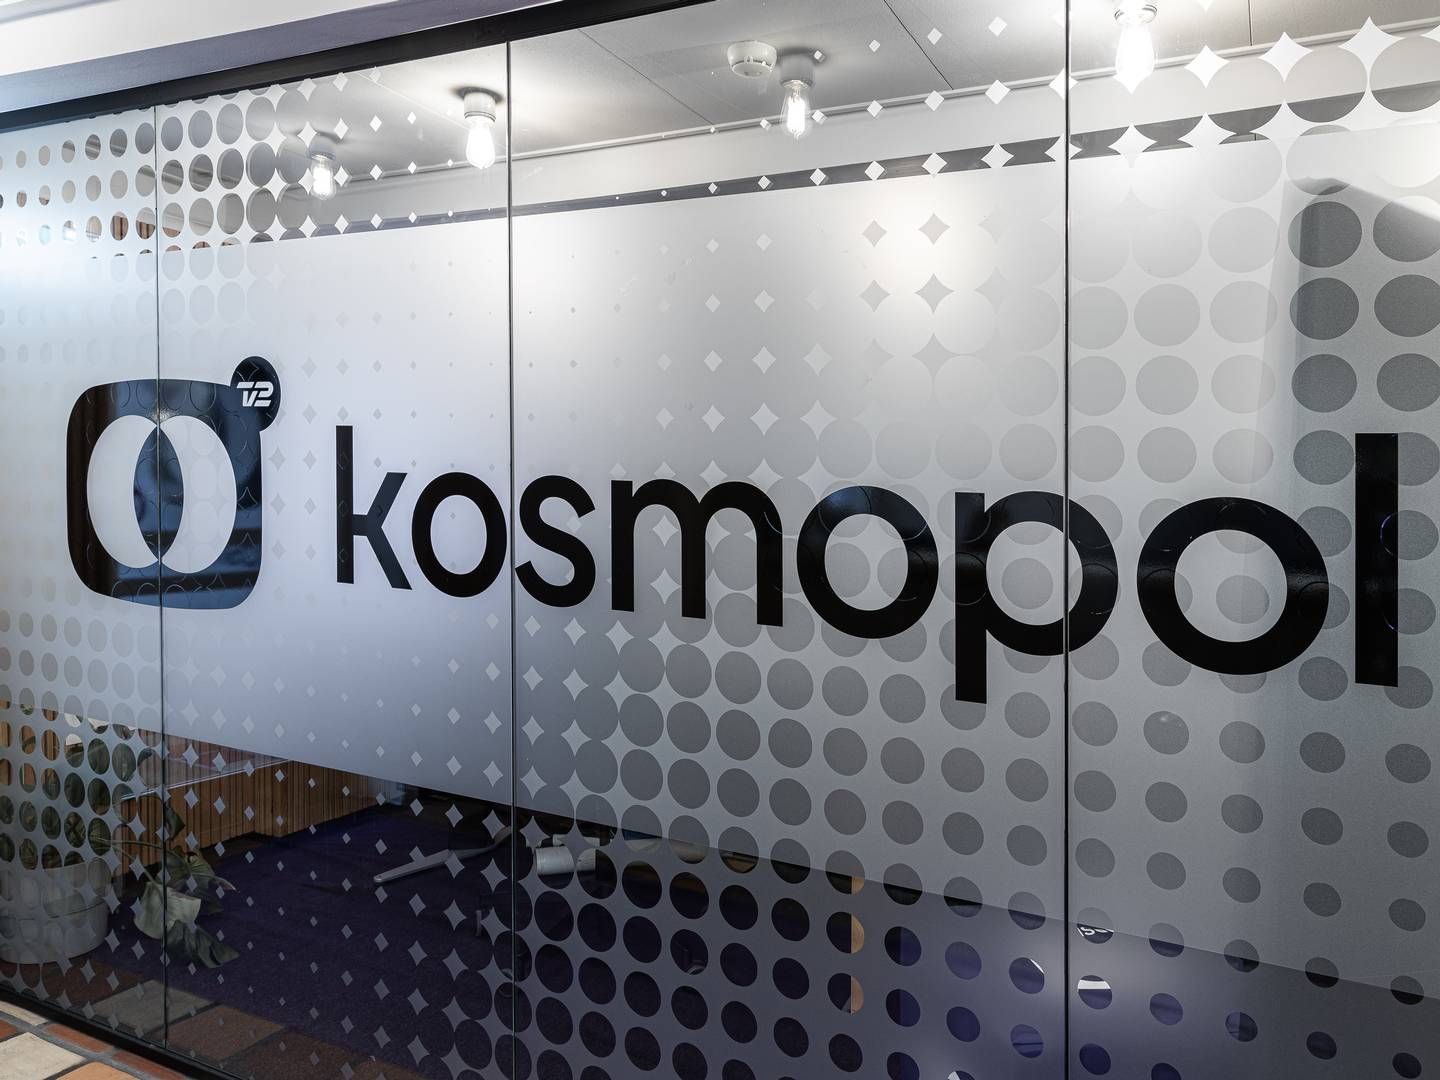 TV 2 Kosmopol får kritik af Rigsrevisionen for mangelfulde udbud. | Foto: PR-foto